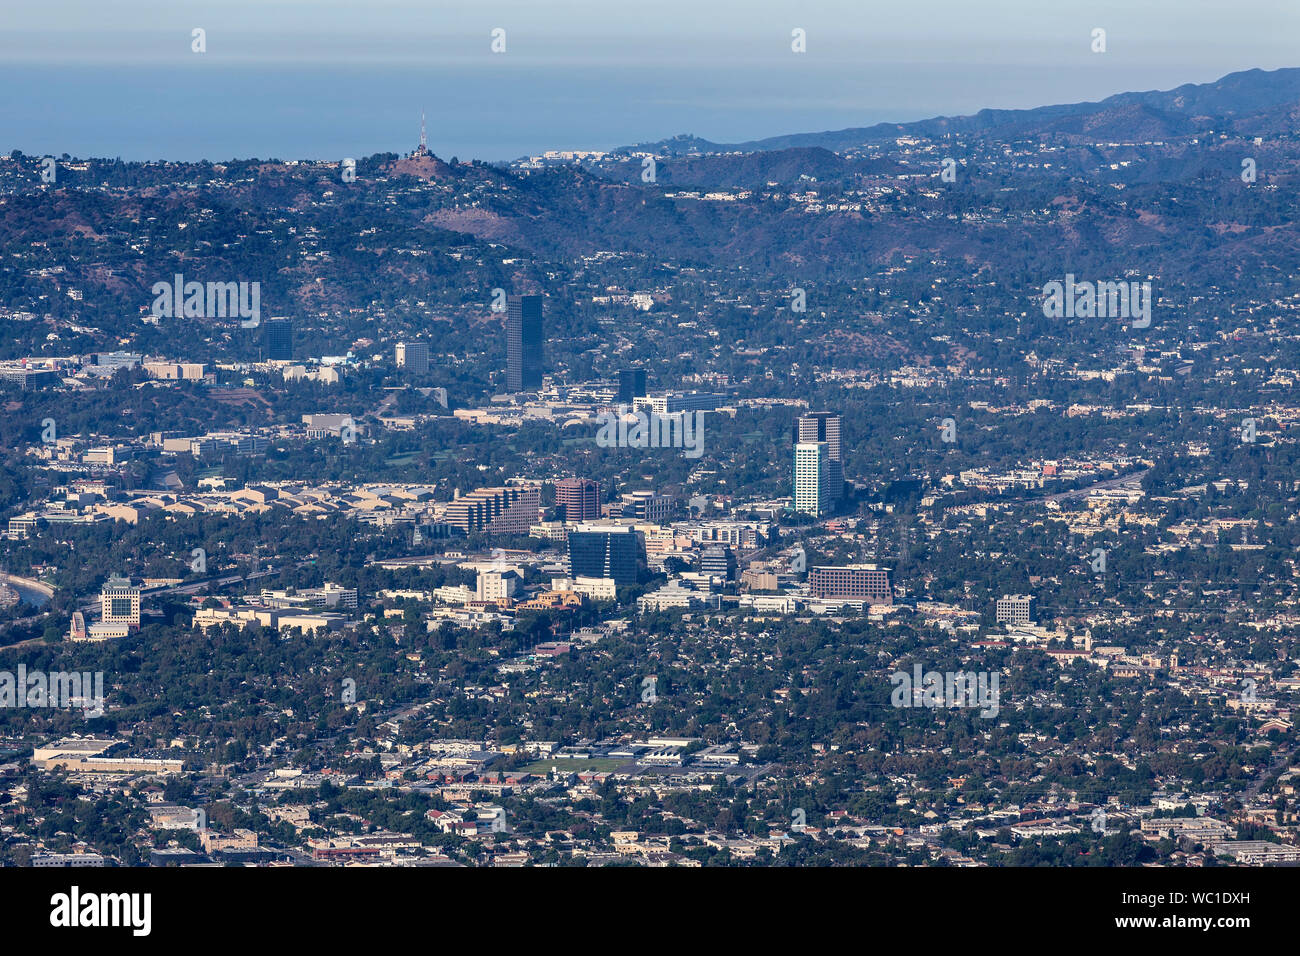 Vue aérienne du quartier de Burbank Media, Studio City et les montagnes de Santa Monica dans la ville pittoresque de Los Angeles, Californie. Banque D'Images